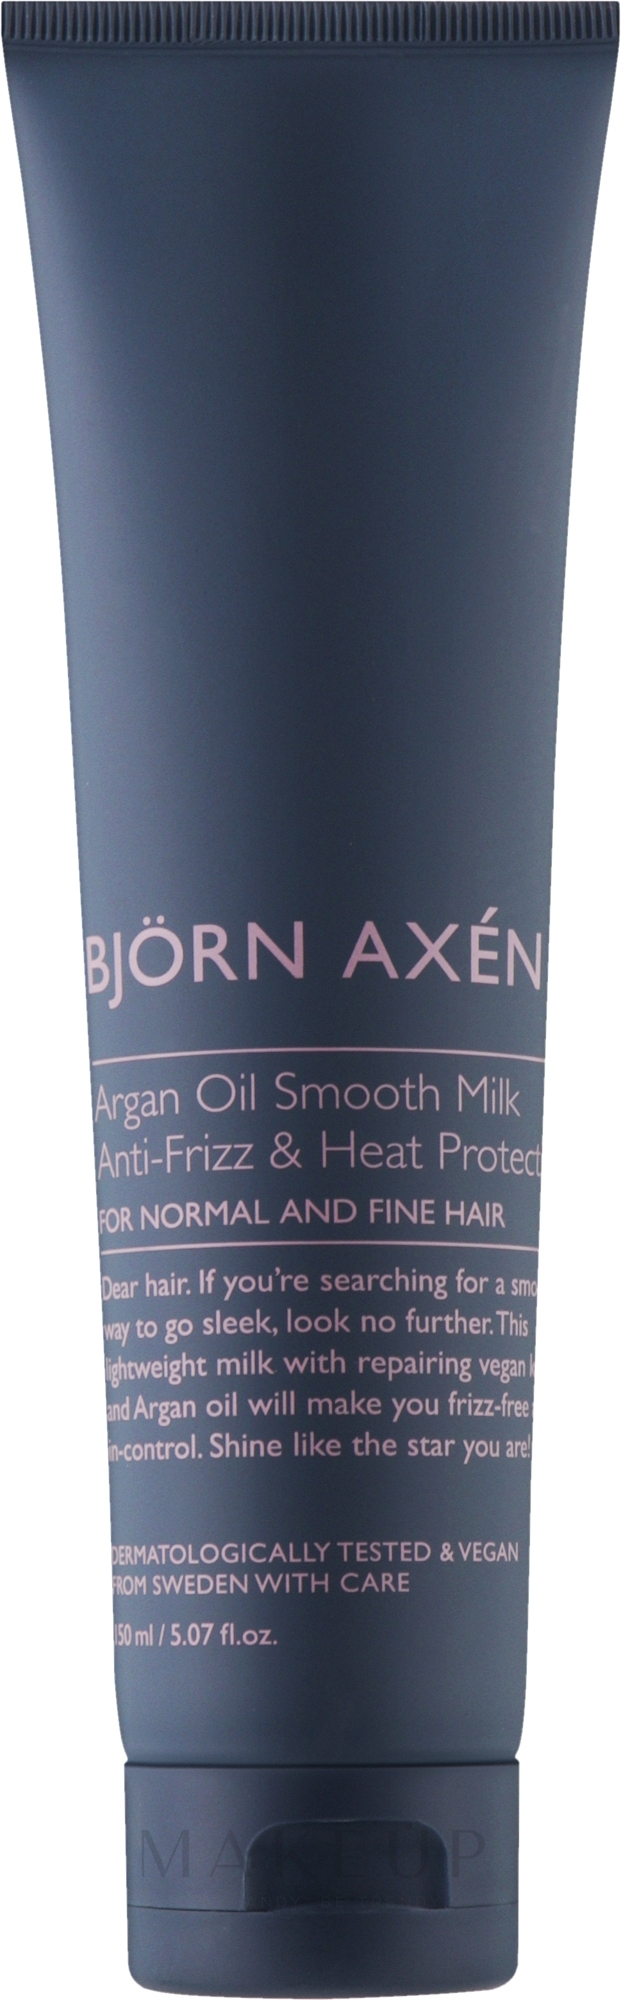 Creme-Milch für das Haarstyling - BjOrn AxEn Argan Oil Smooth Milk — Bild 150 ml